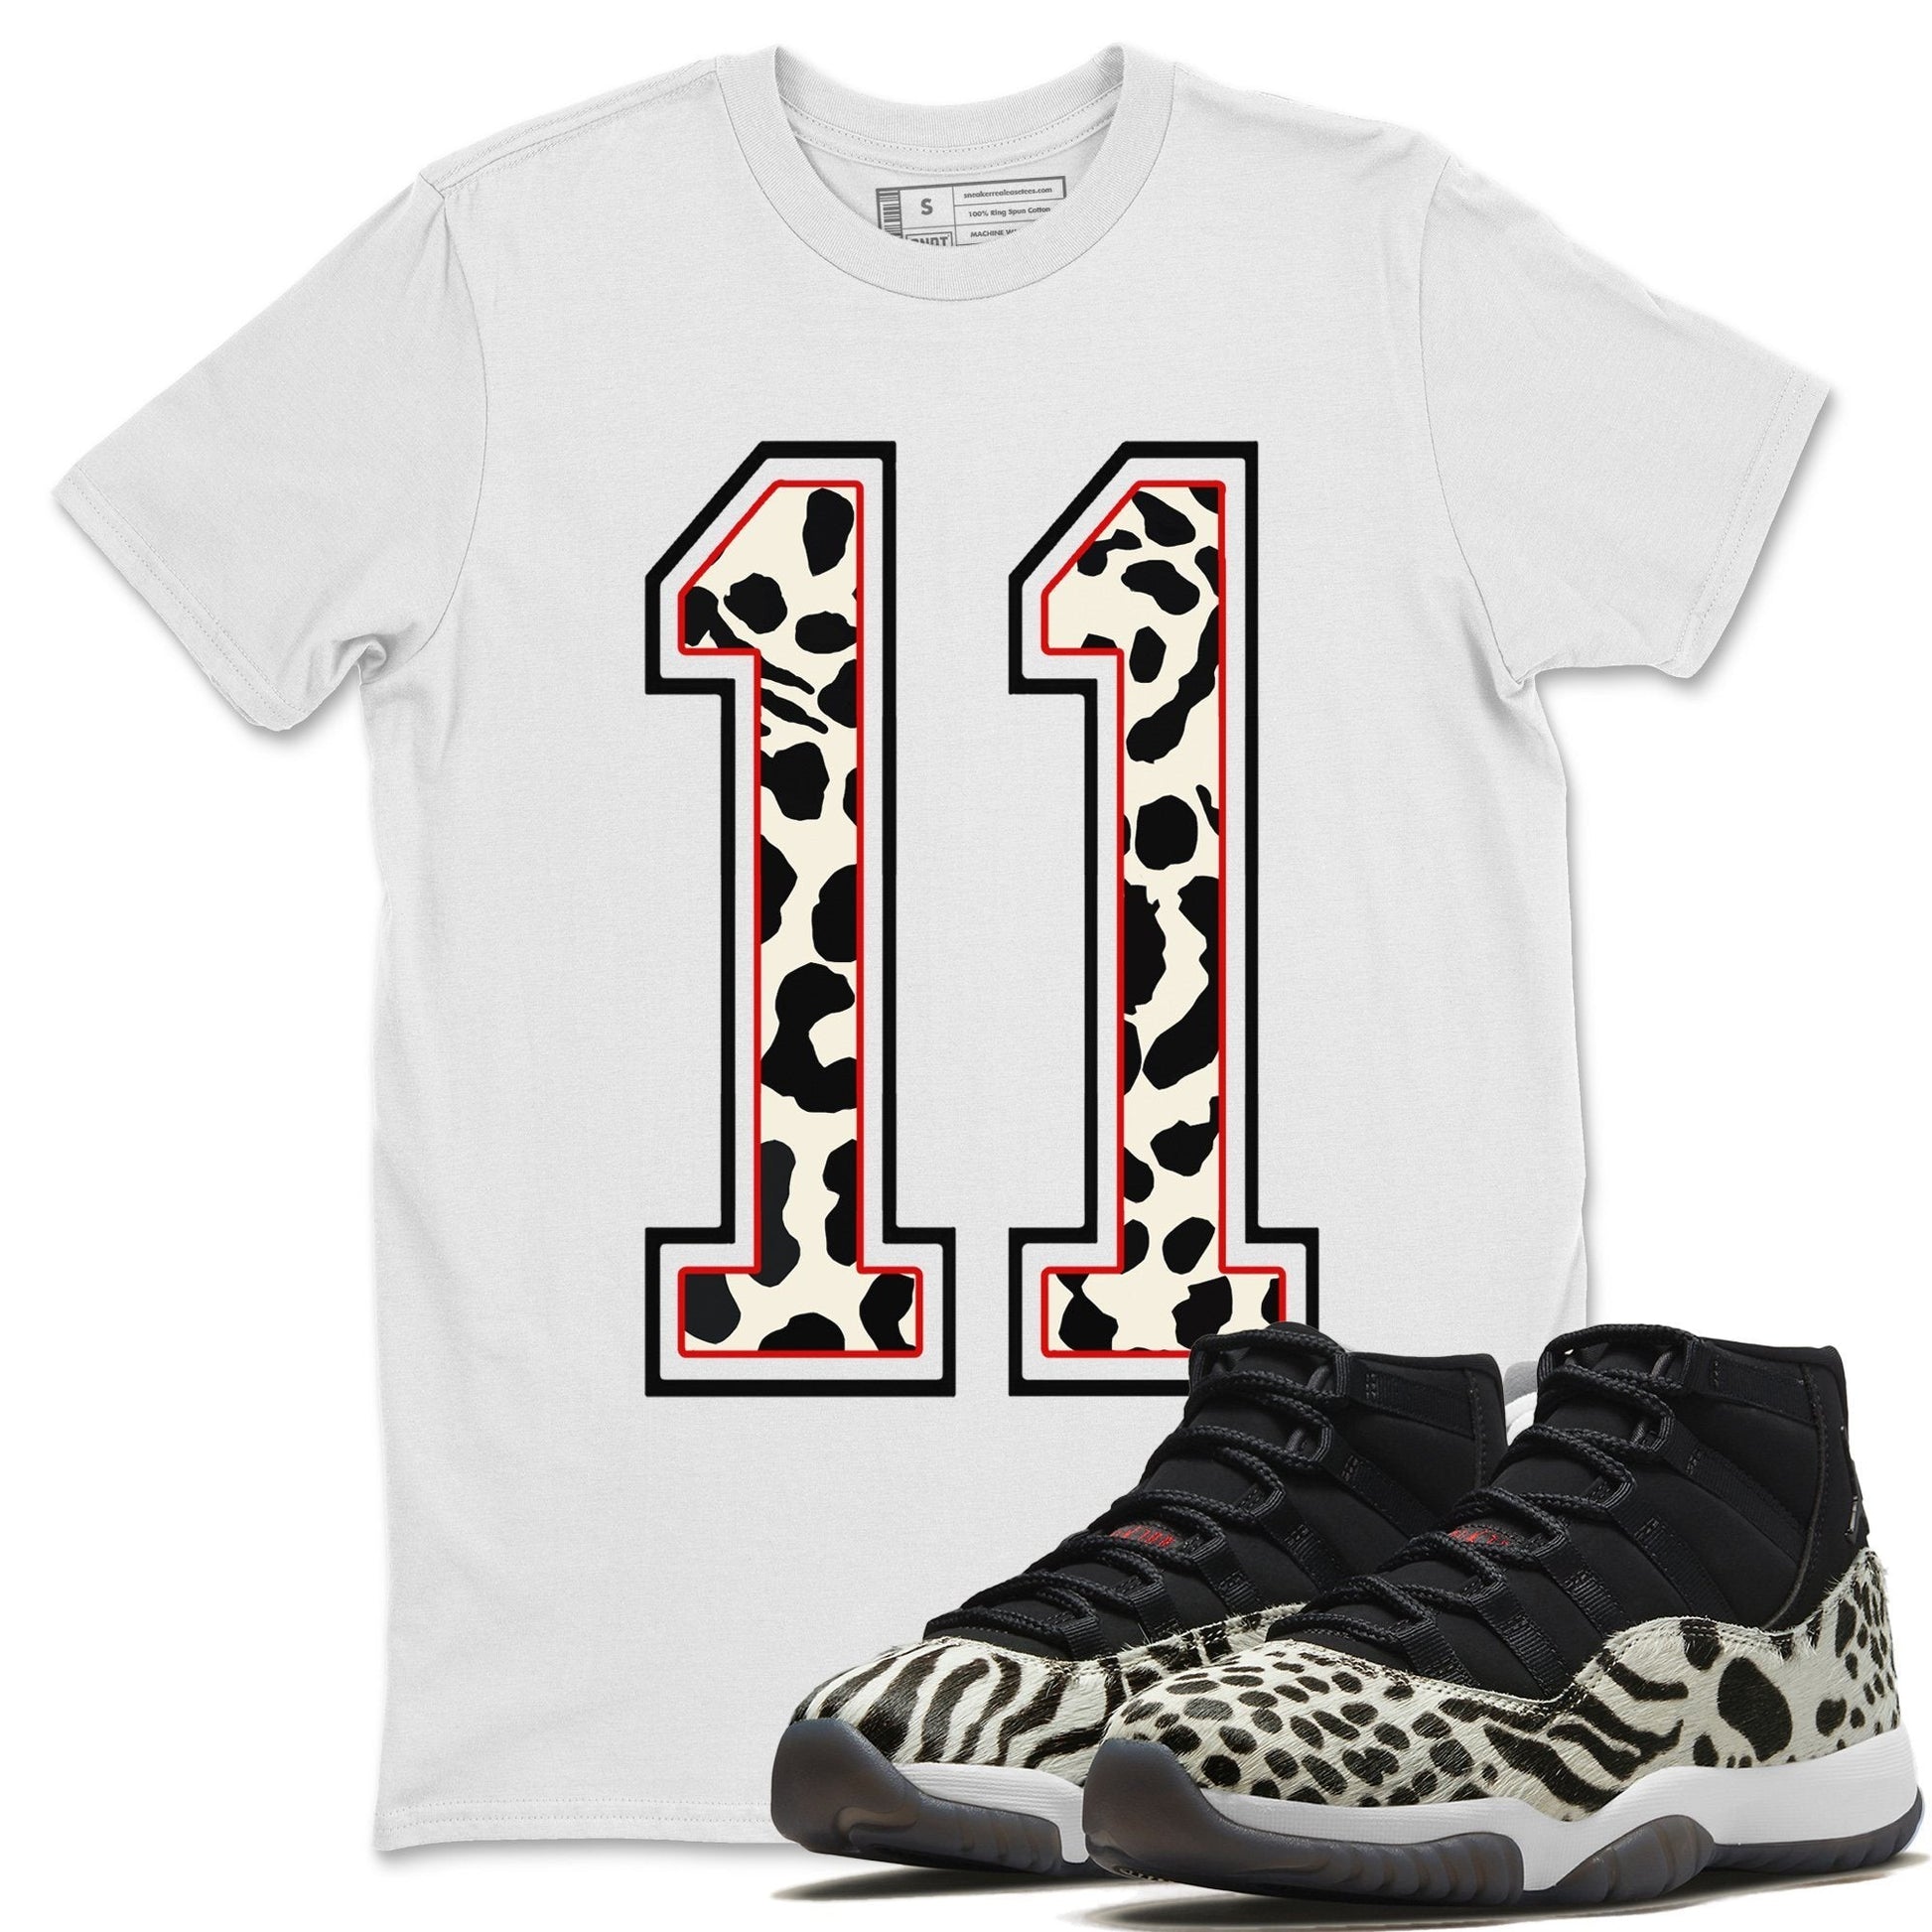 Jordan 11 Animal Instinct Sneaker Match Tees Texture 11 Sneaker Tees Jordan 11 Animal Instinct Sneaker Release Tees Unisex Shirts